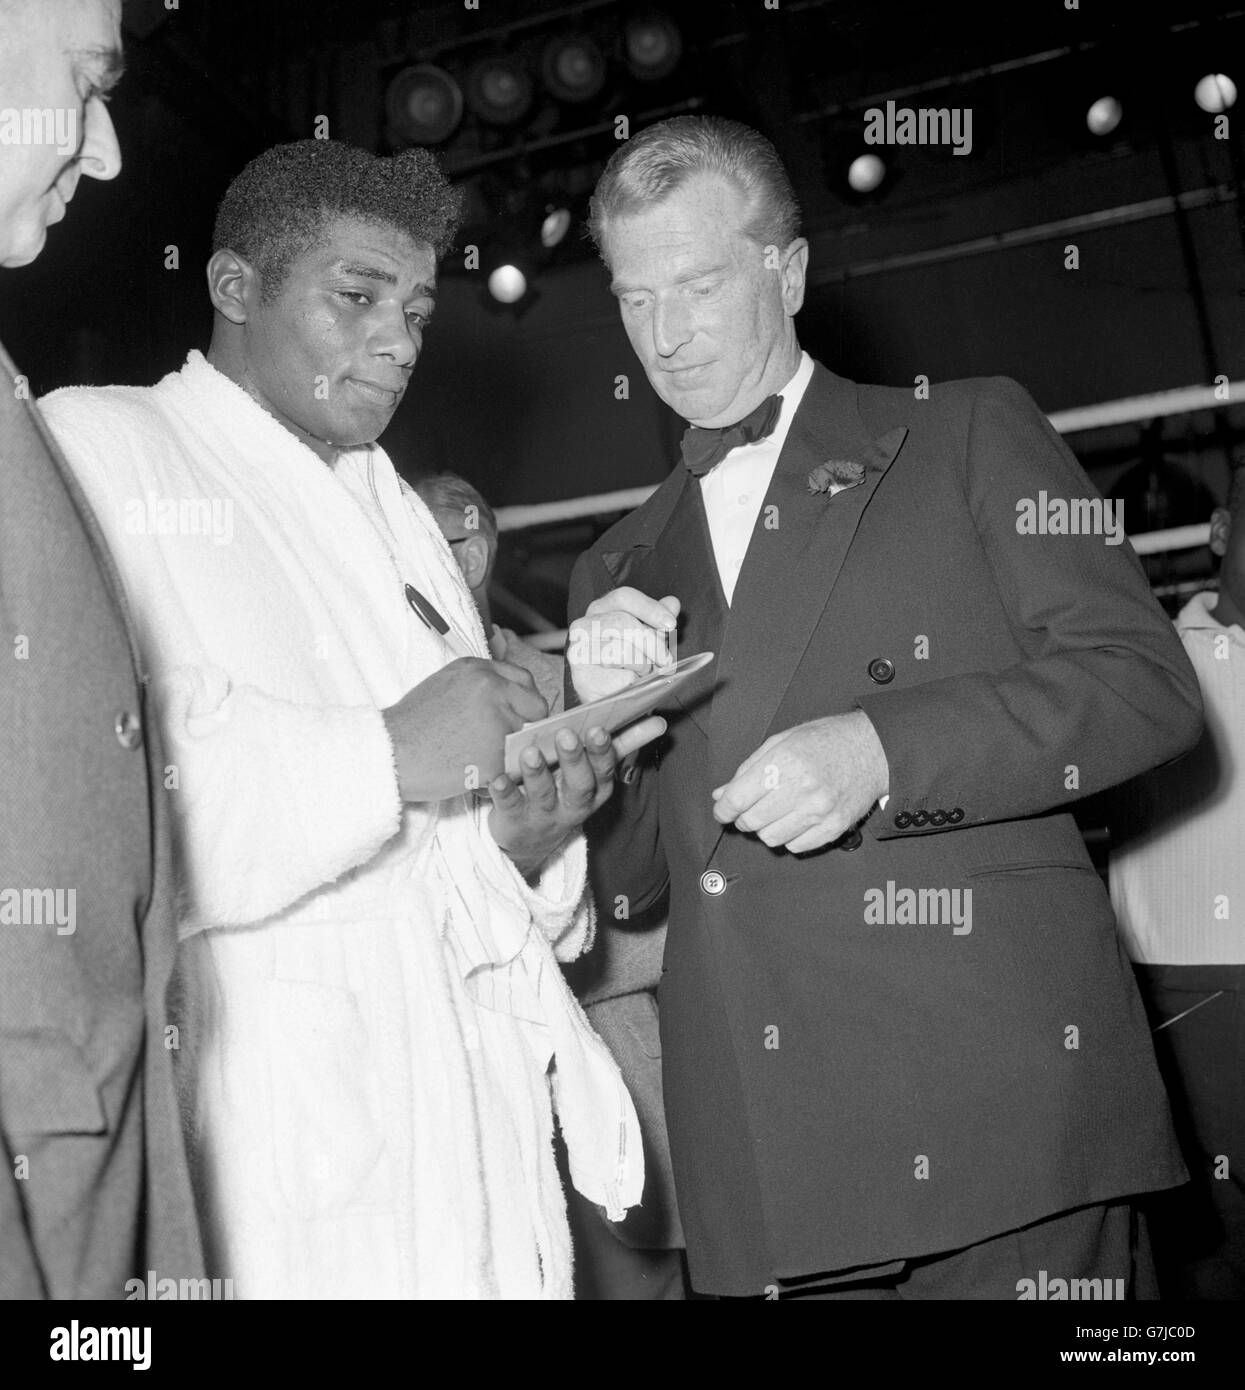 Der Weltmeister Floyd Patterson aus Amerika unterzeichnet sein Autogramm für den Mann, der ihn gerade interviewt hat, John Freeman (r). Der Boxer hatte gerade zusätzlich zum Interview eine Ausstellung gegeben. Stockfoto